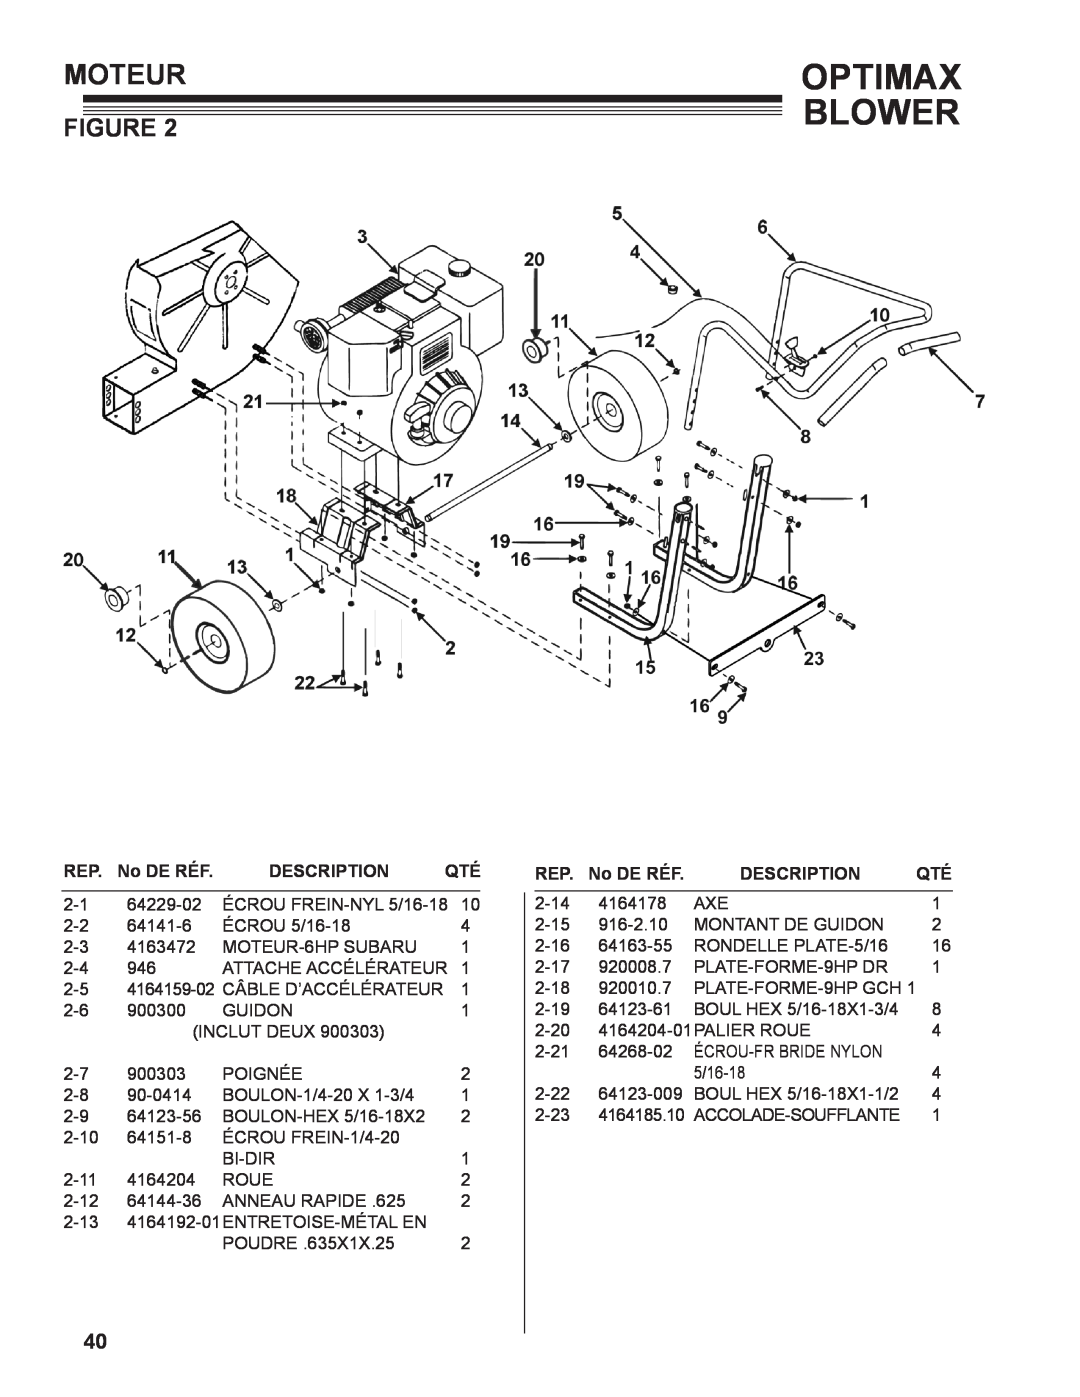 Little Wonder LB601-00-01 technical manual Moteur, Optimax Blower, No DE RÉF, Description 